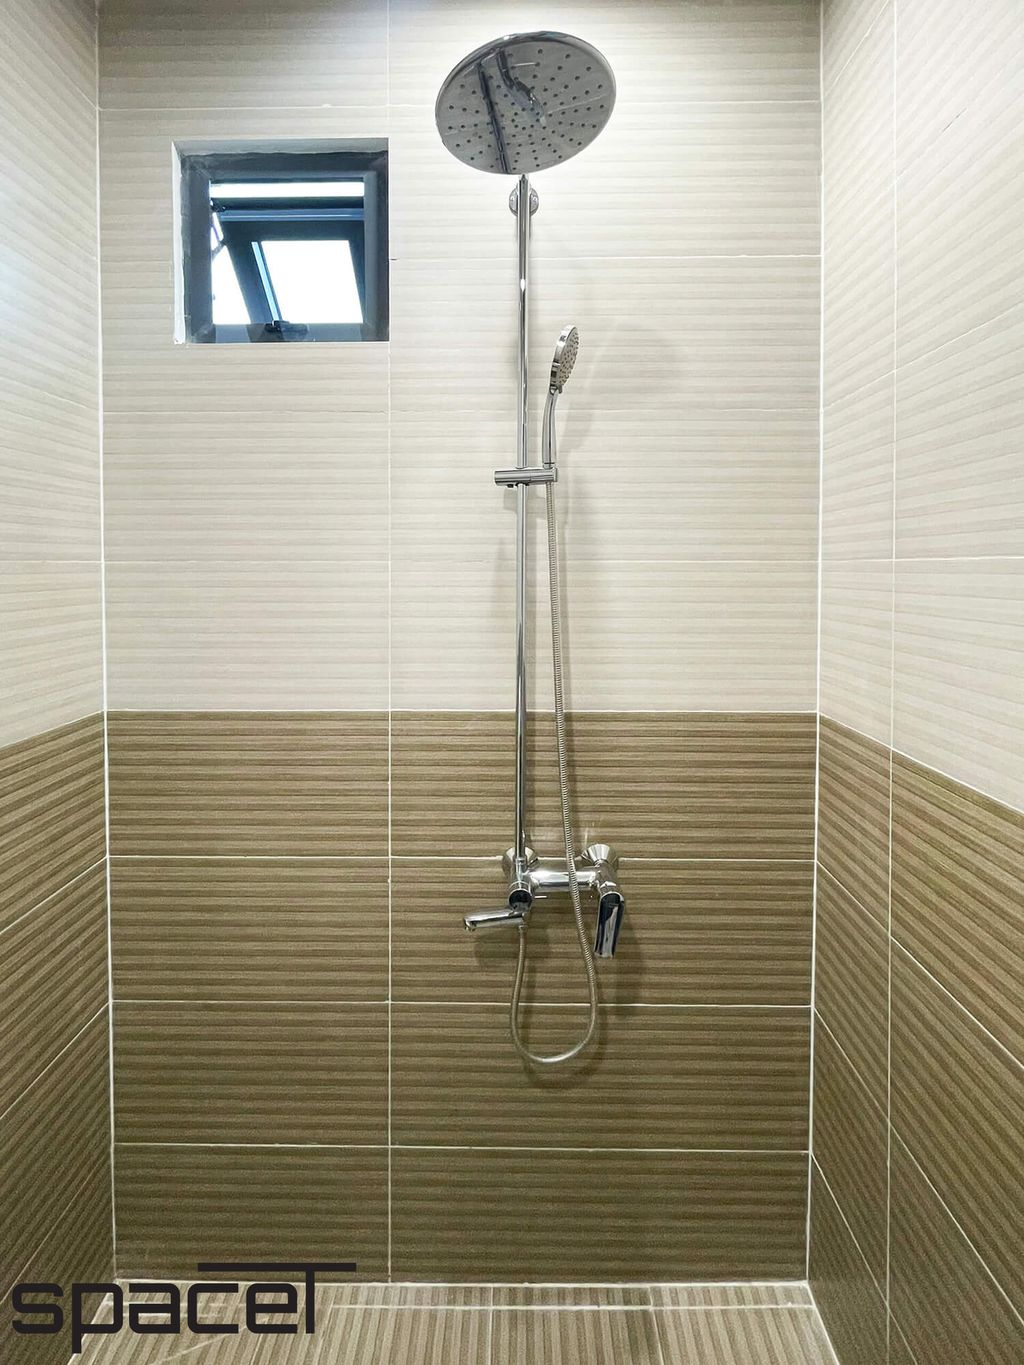 Phòng tắm - Nhà phố 100m2 tại Biên Hòa Đồng Nai - Phong cách Modern  | Space T